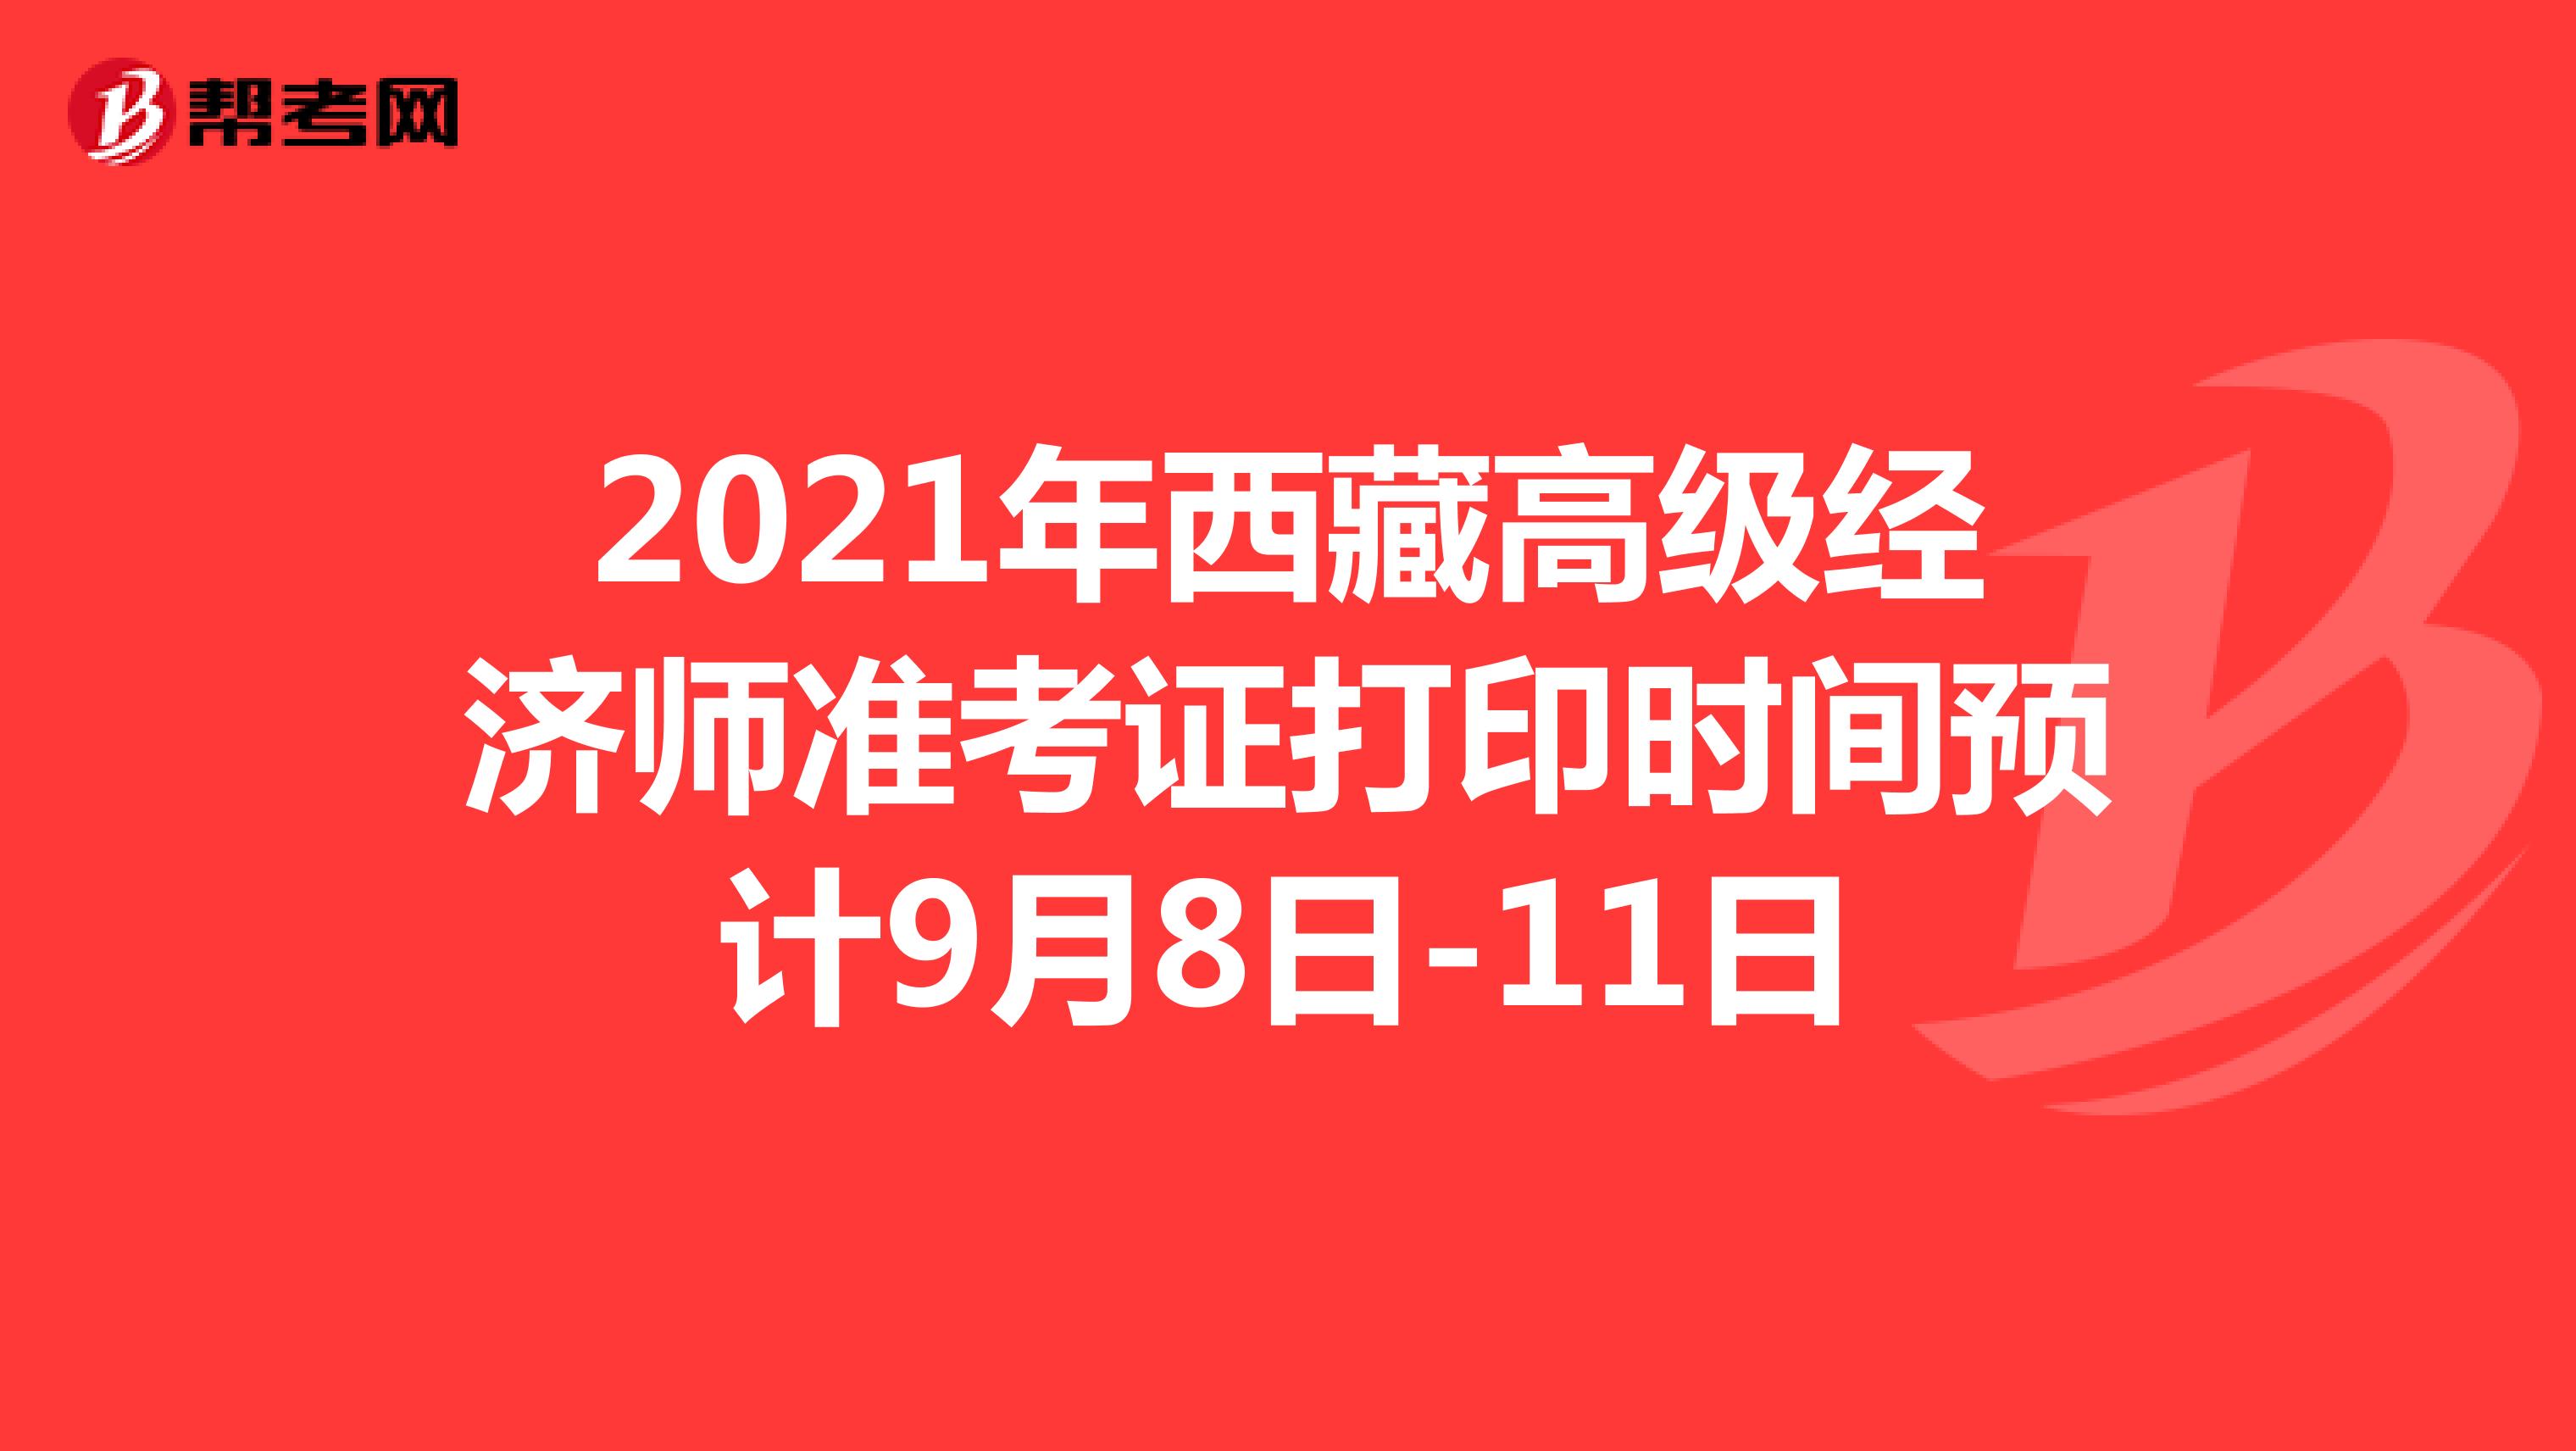 2021年西藏高级经济师准考证打印时间预计9月8日-11日